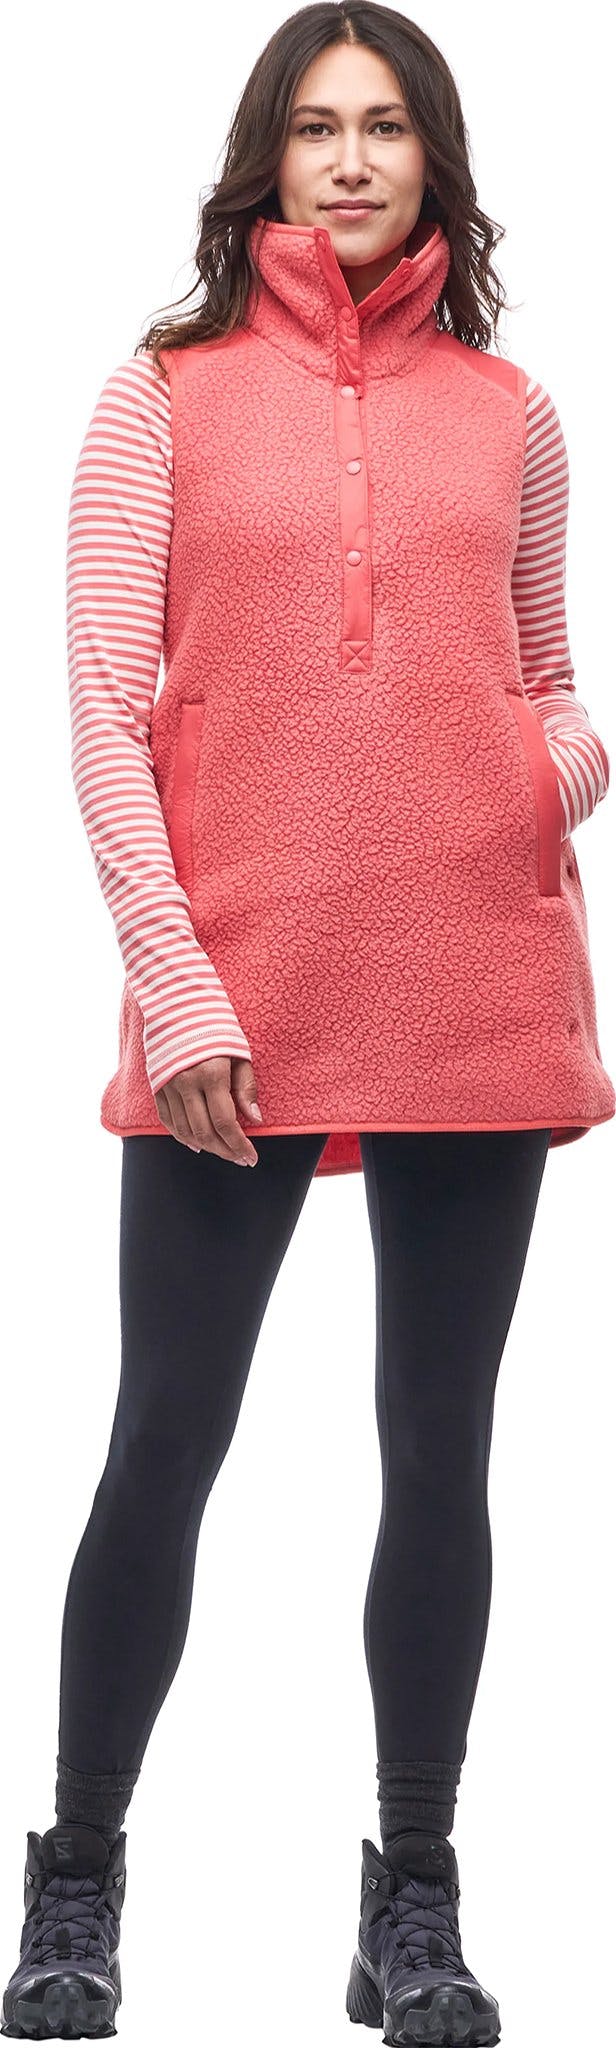 Product image for Pecora Sleeveless Tunic - Women's